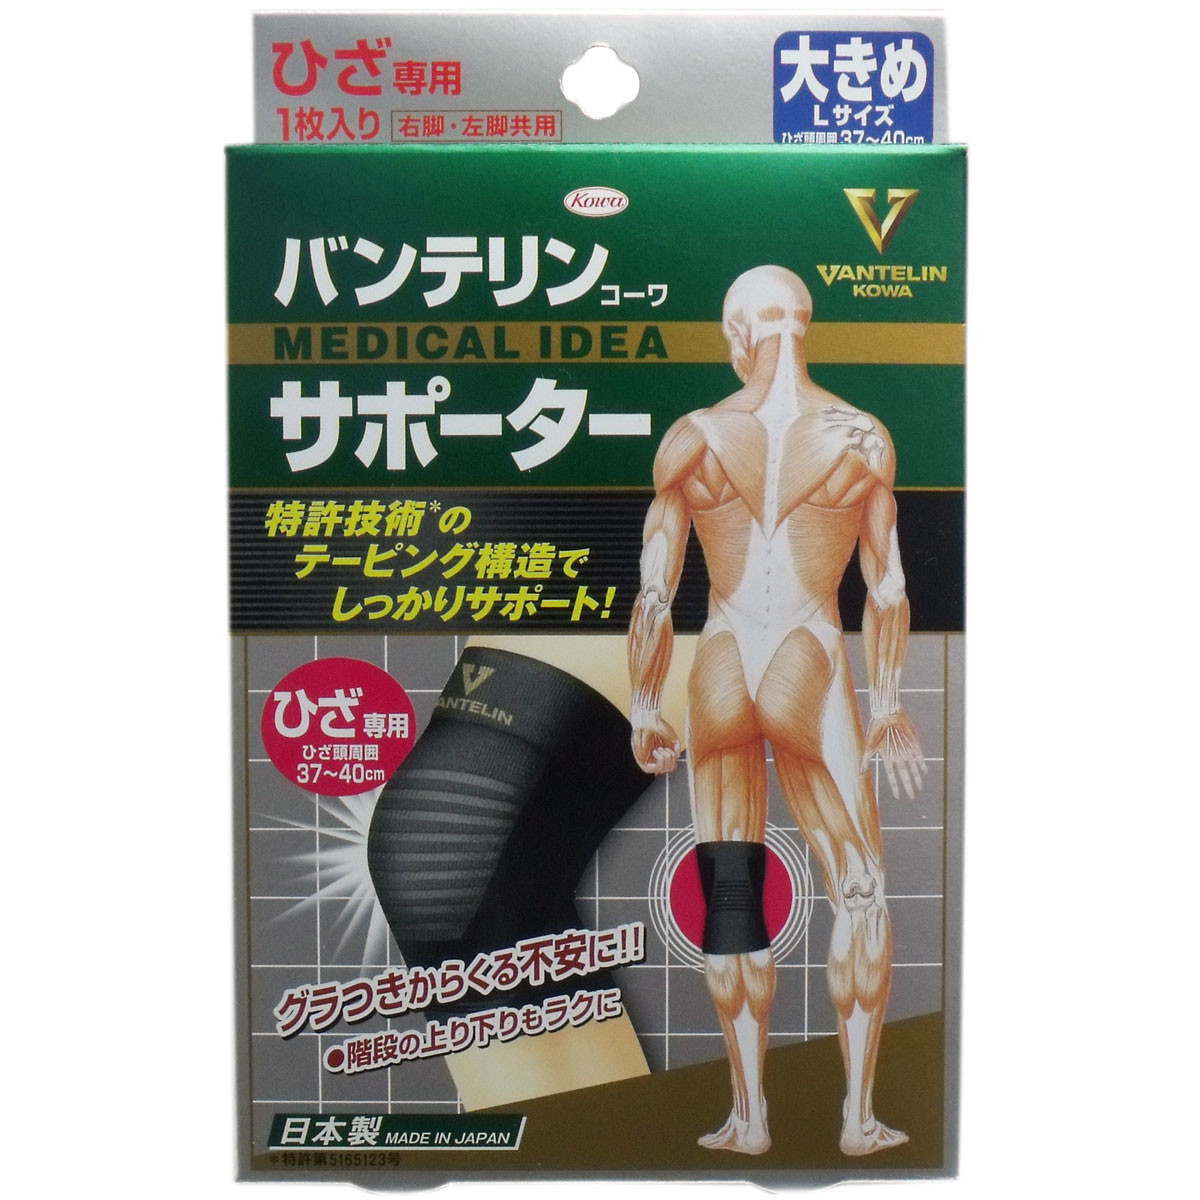 日本 KOWA 萬特力肢體護具(未滅菌) - 膝部S/M/L 膝蓋 膝部專用